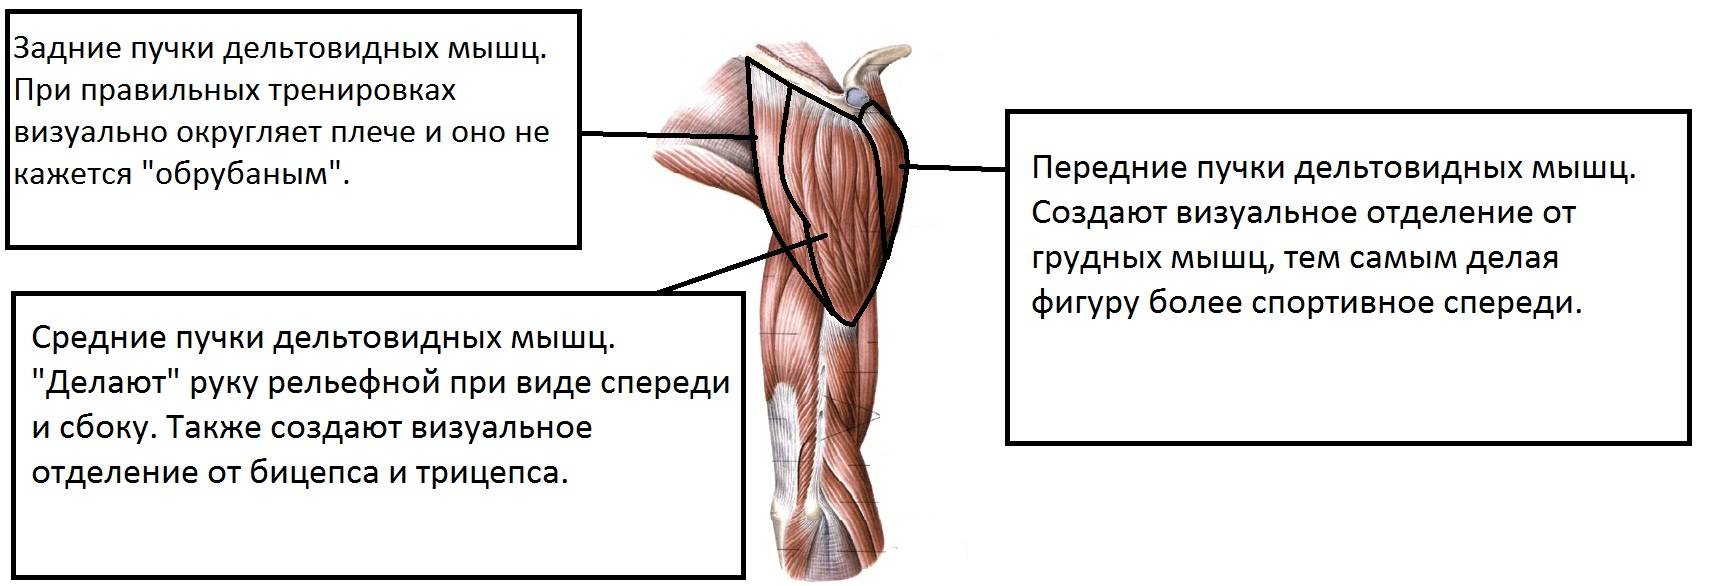 Средняя дельтовидная мышца. анатомия дельтовидной мышцы человека - информация